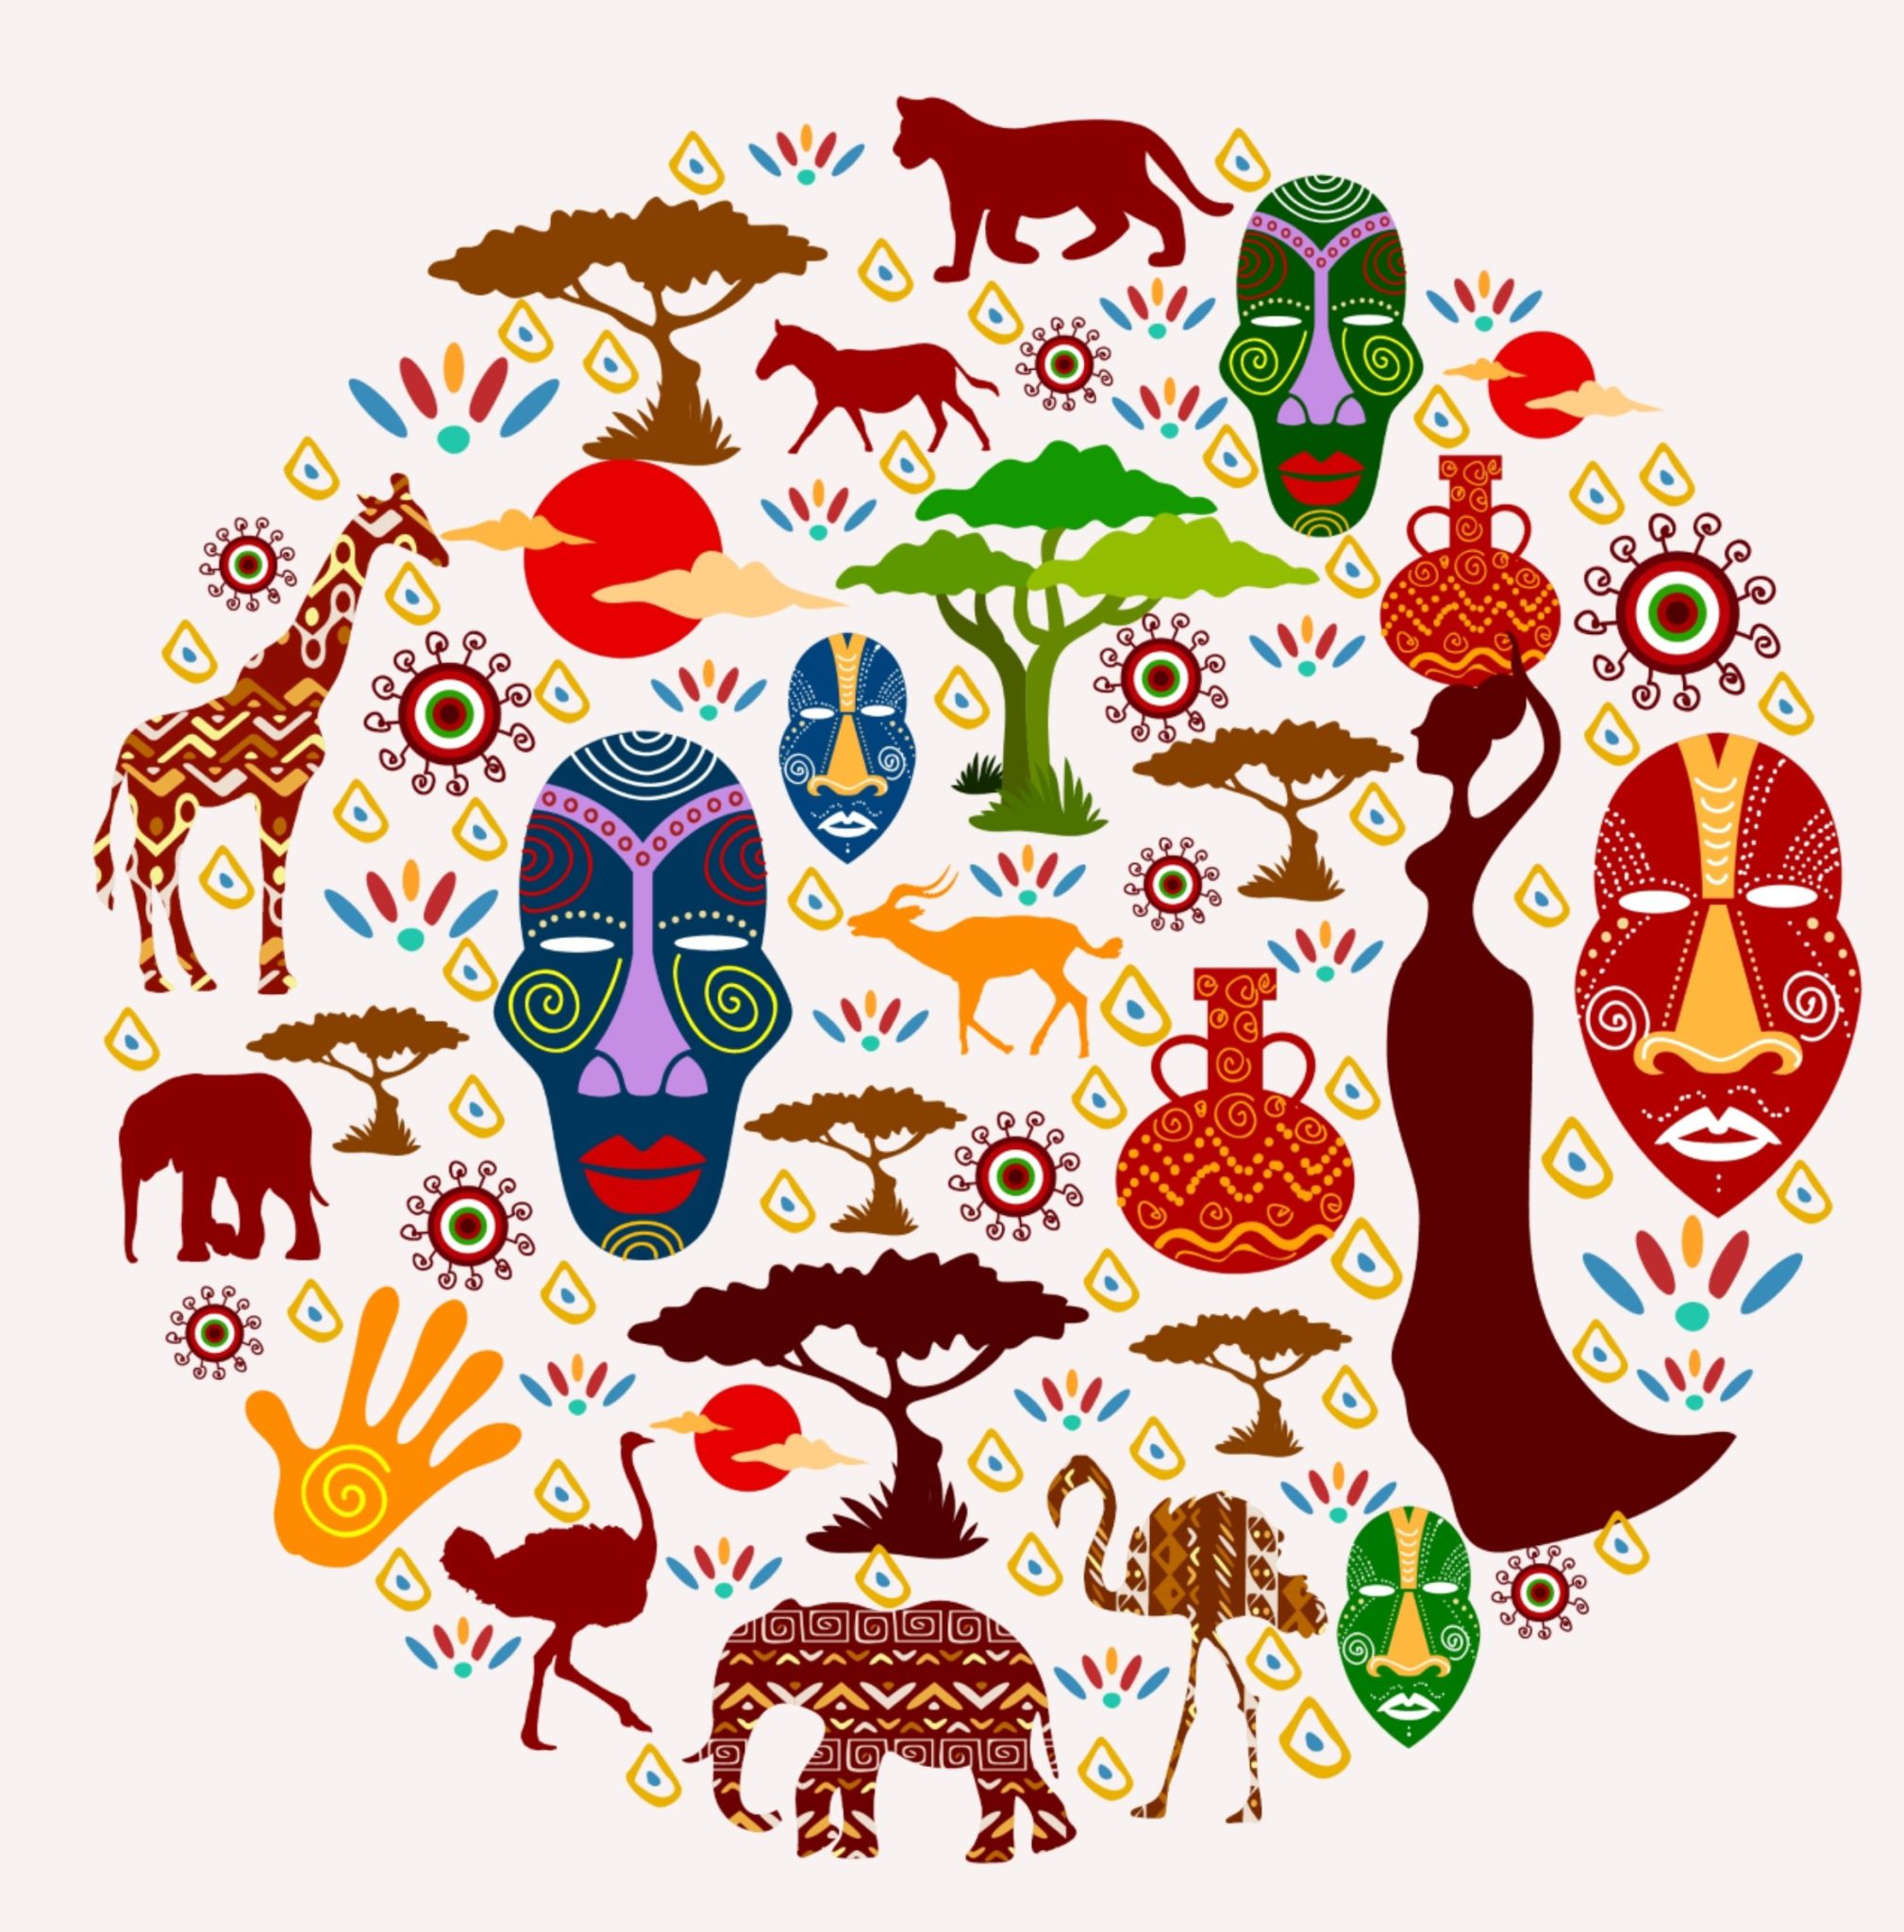 Этнический предмет. Традиционные орнаменты народов Африки. Орнамент Африканский стиль. Этнический орнамент. Этнические символы.